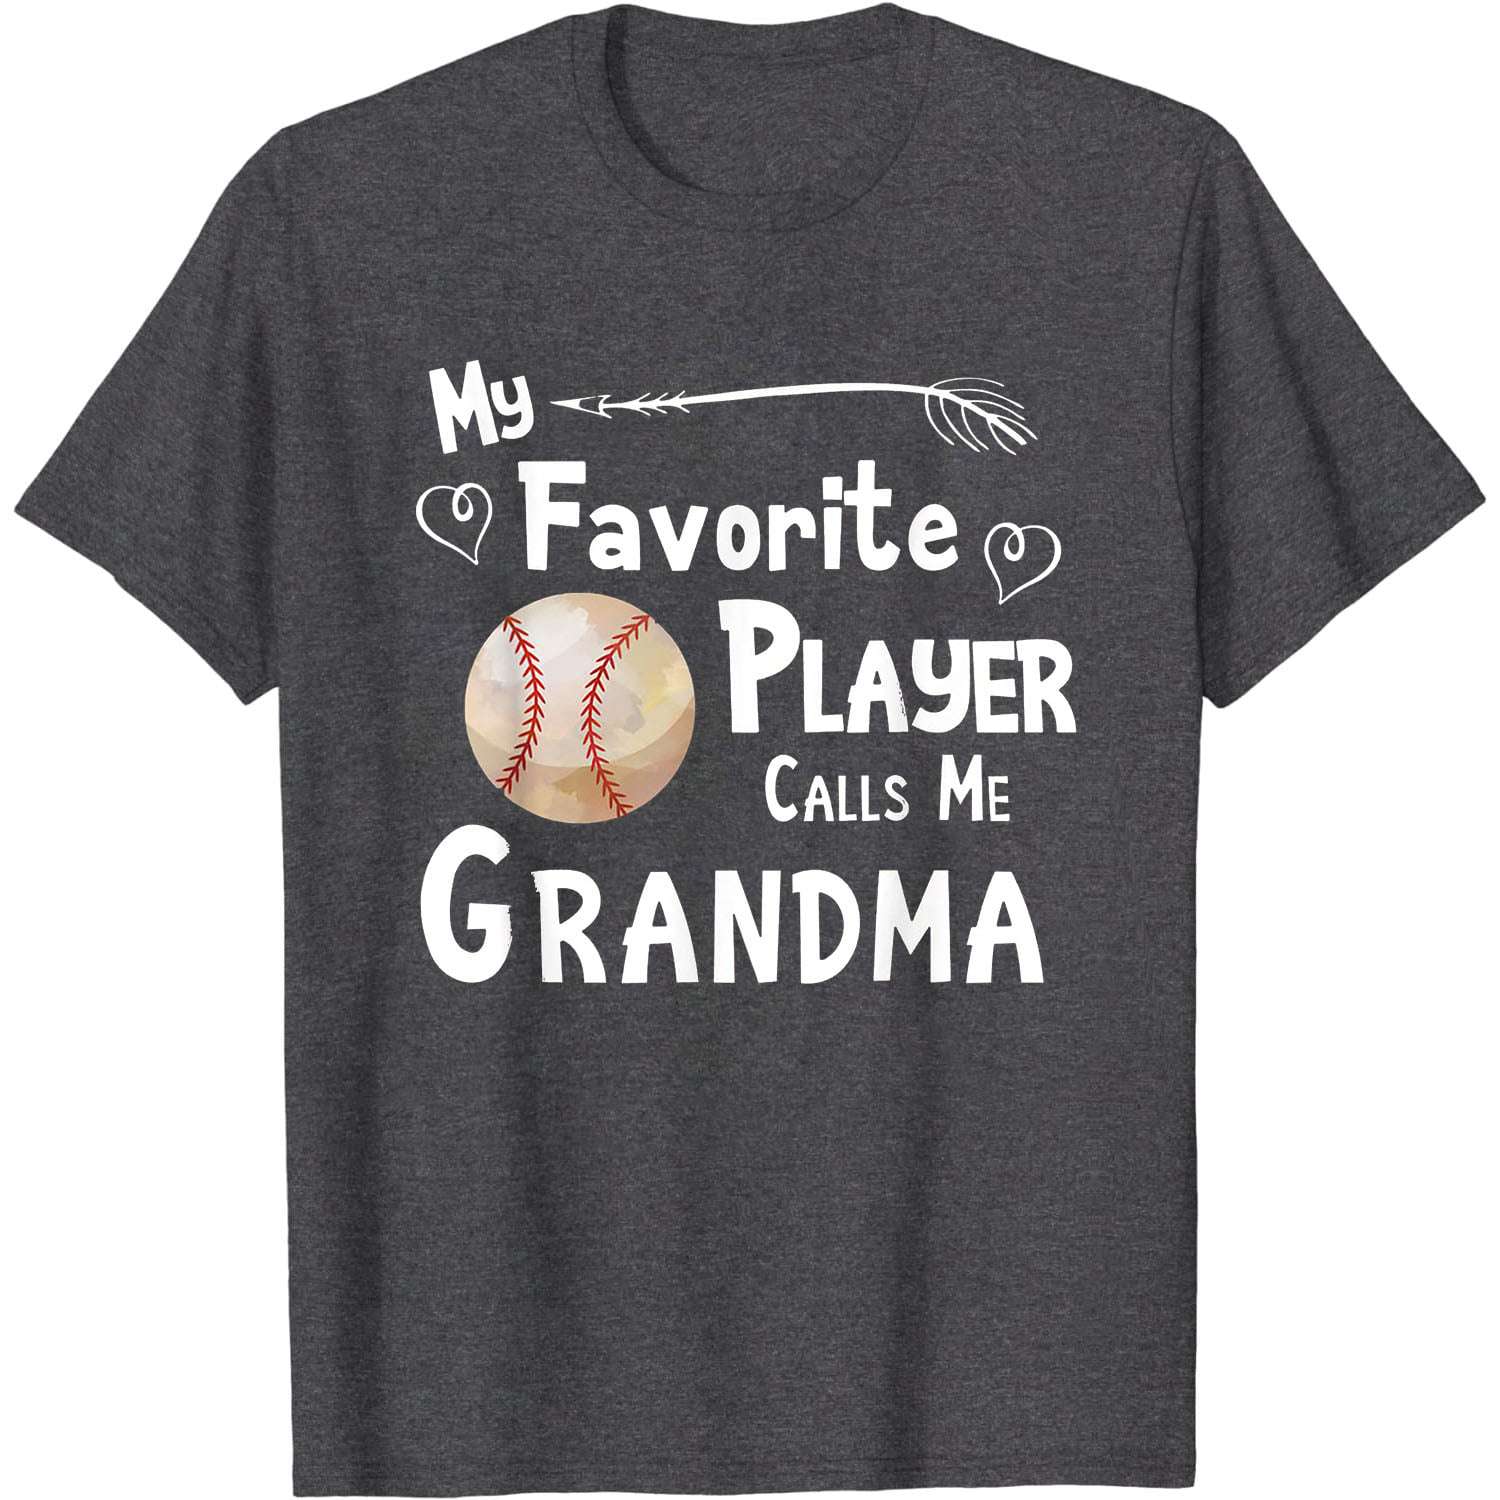 My favorite player calls me grandma - Baseball grandma, baseball players gift